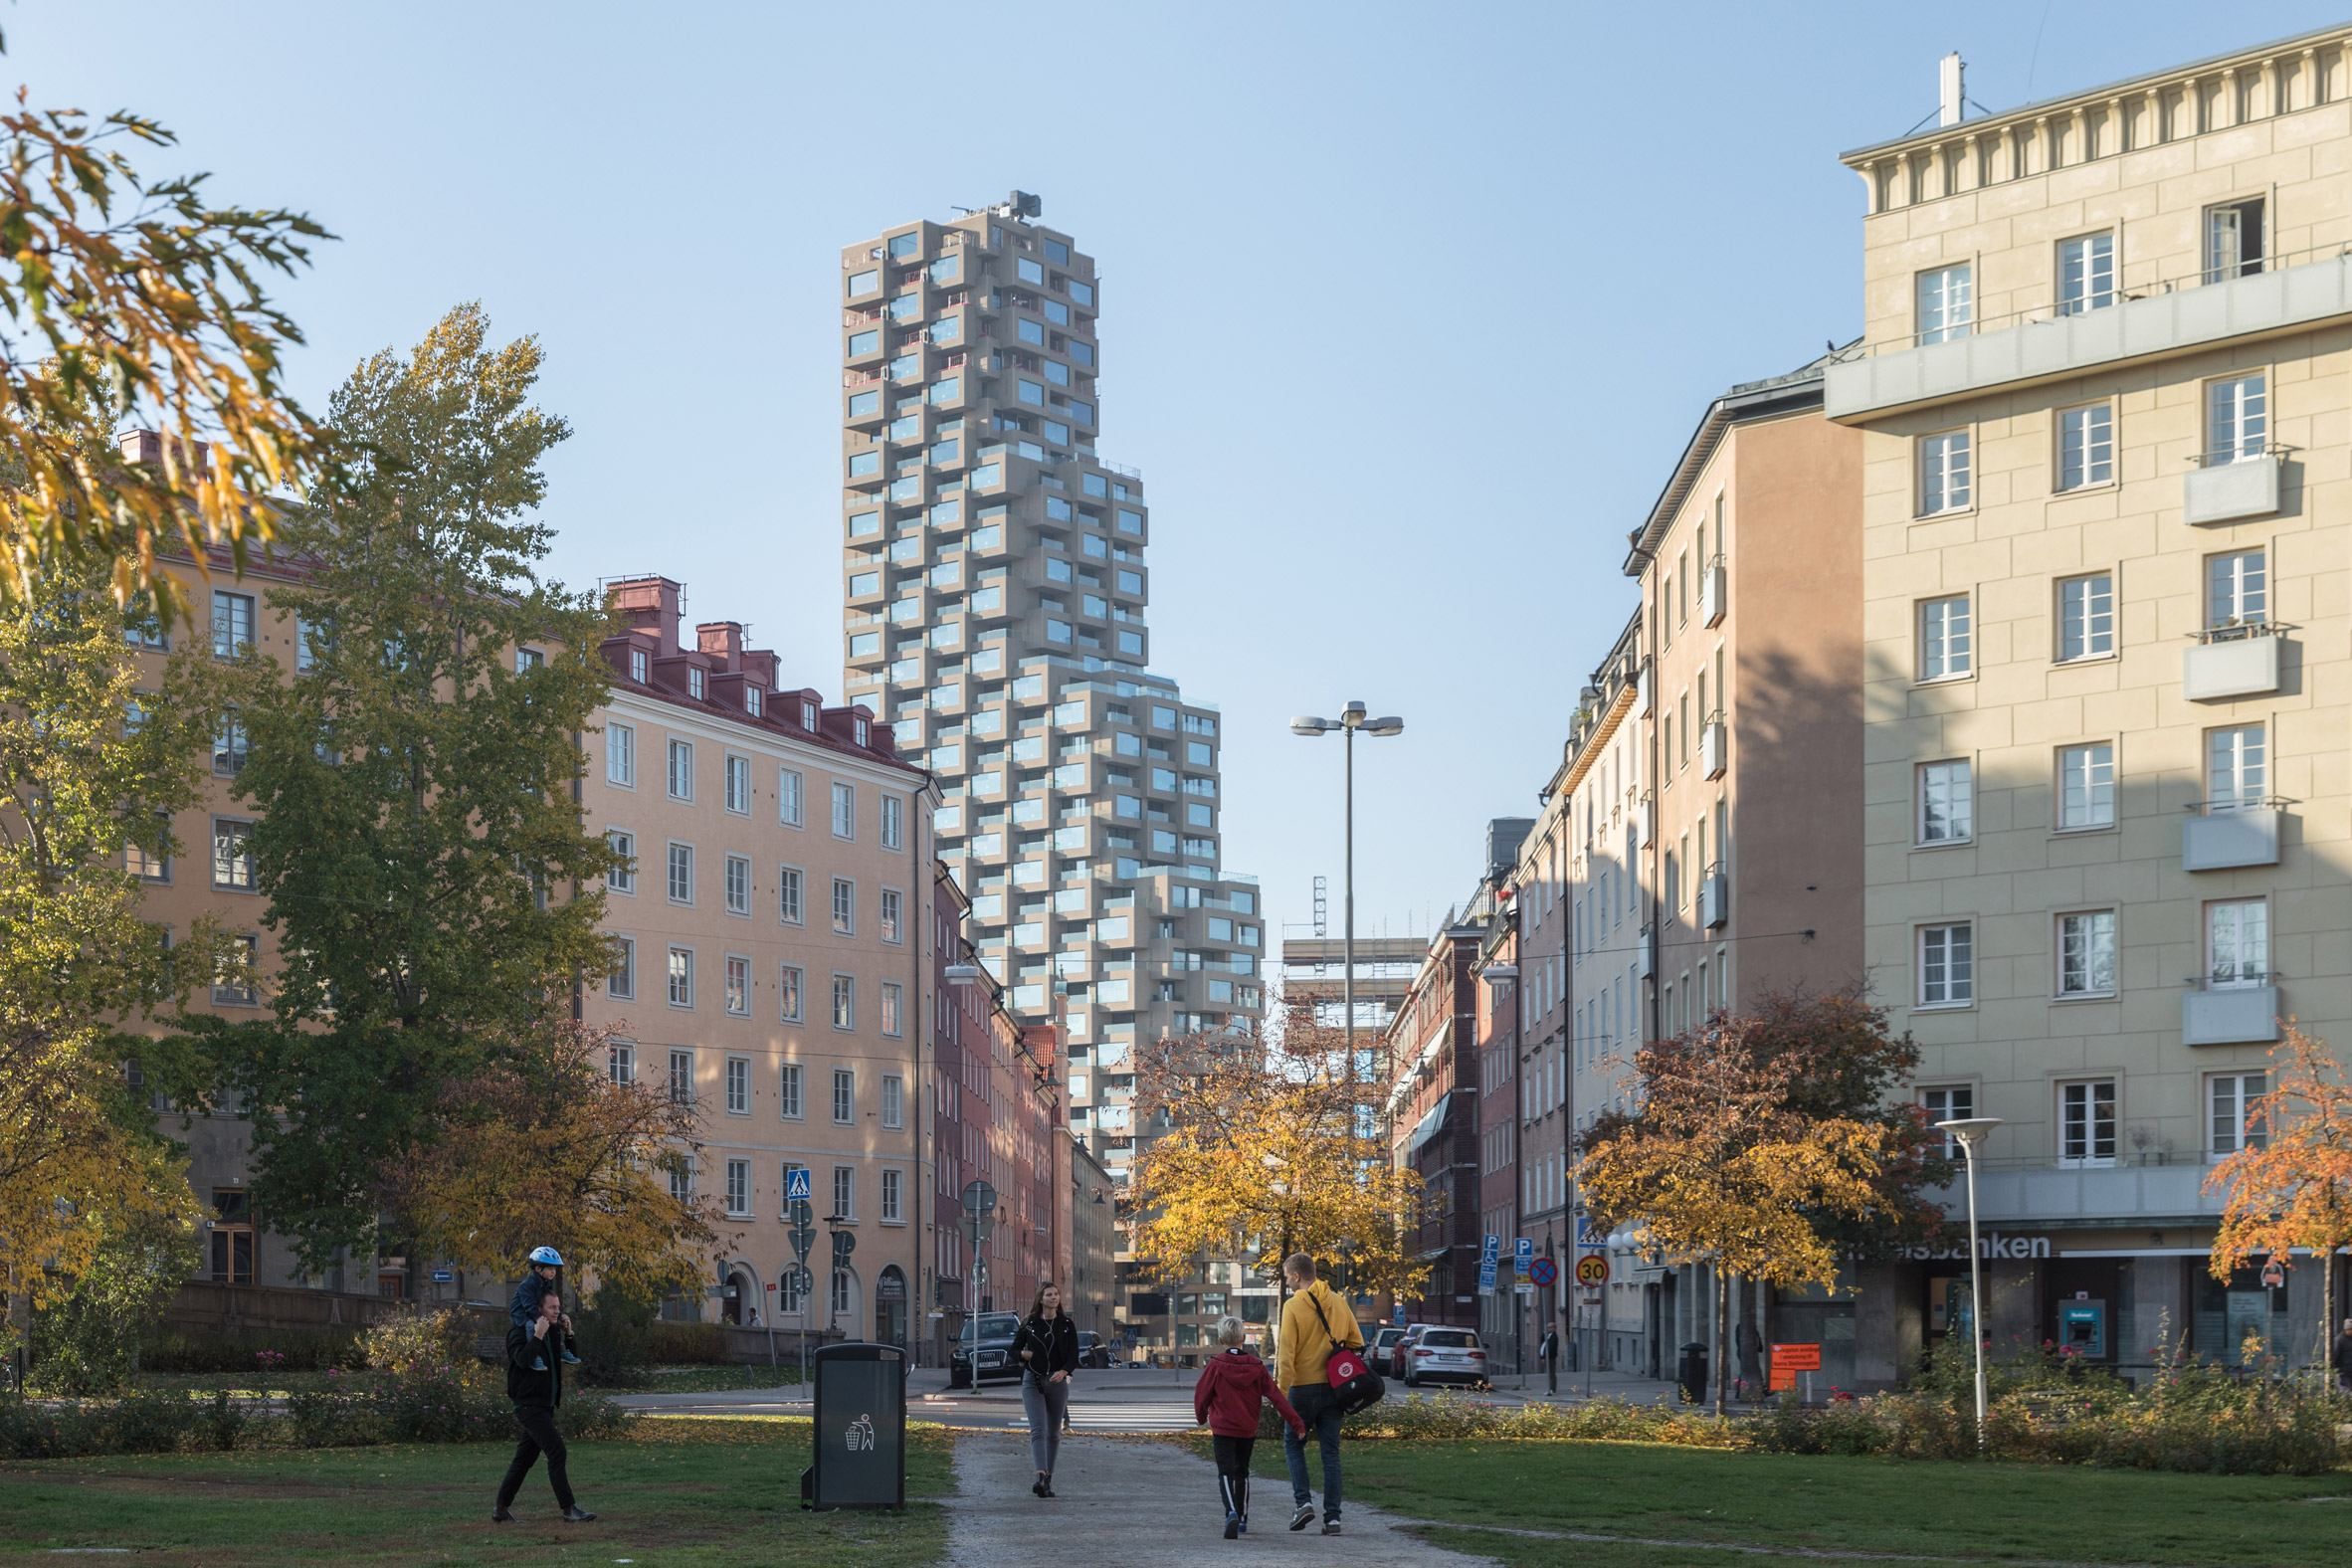 Innovationen Tower: как выглядит и чем поражает самый высокий жилой небоскреб Стокгольма